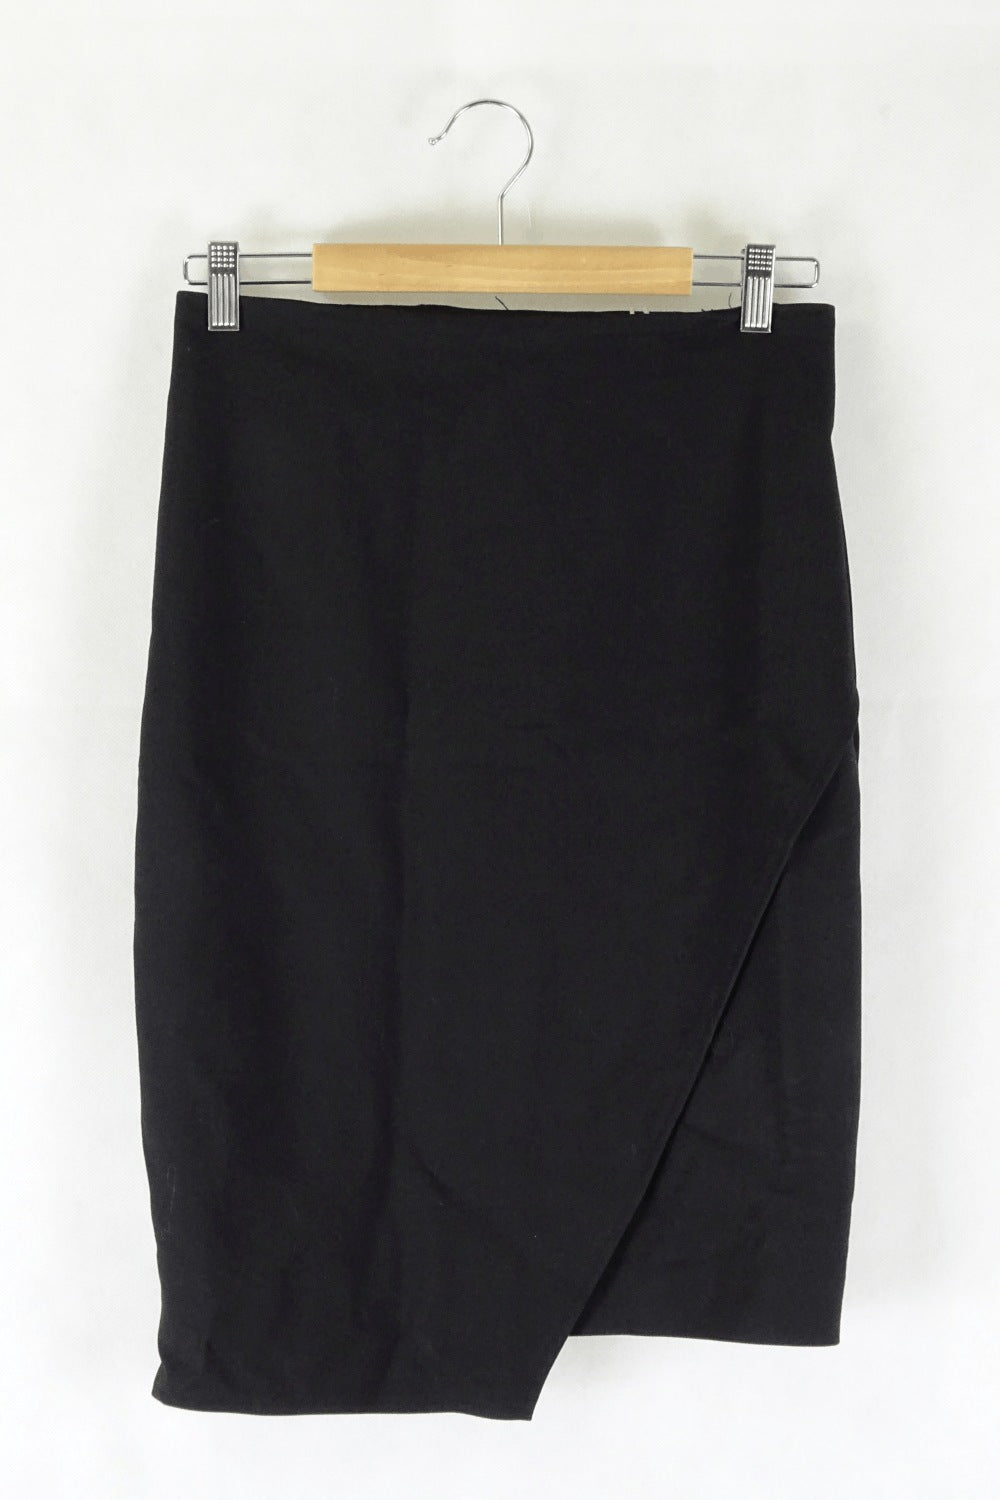 Portmans Black Skirt 10